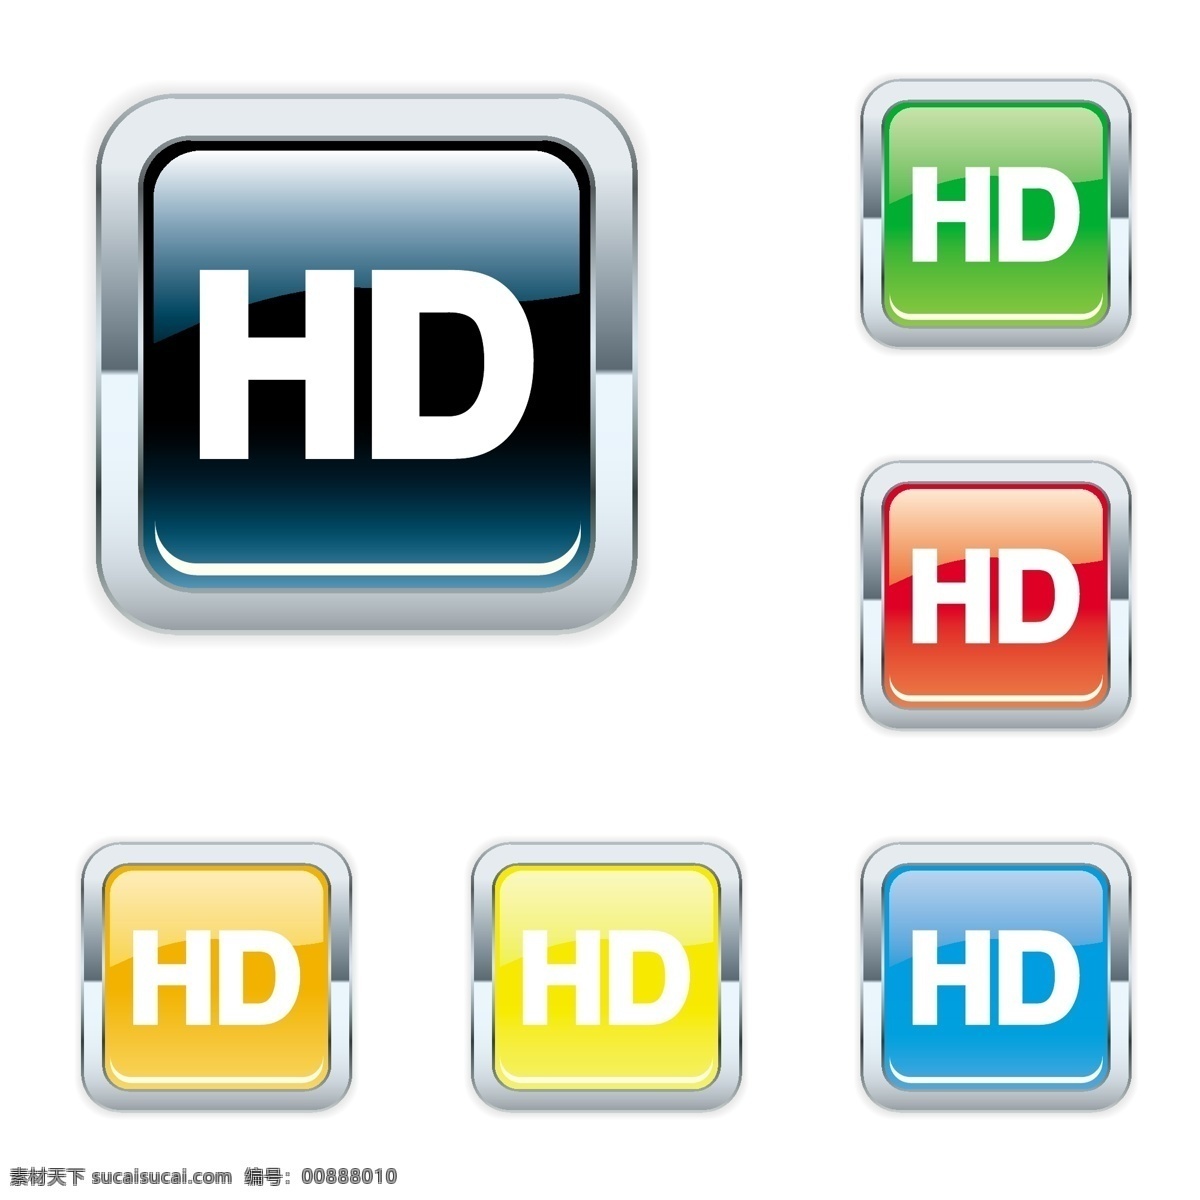 款 hd 按钮 矢量 eps格式 电视 方形 屏幕 矢量素材 液晶电视 圆形 数据线插头 矢量图 其他矢量图